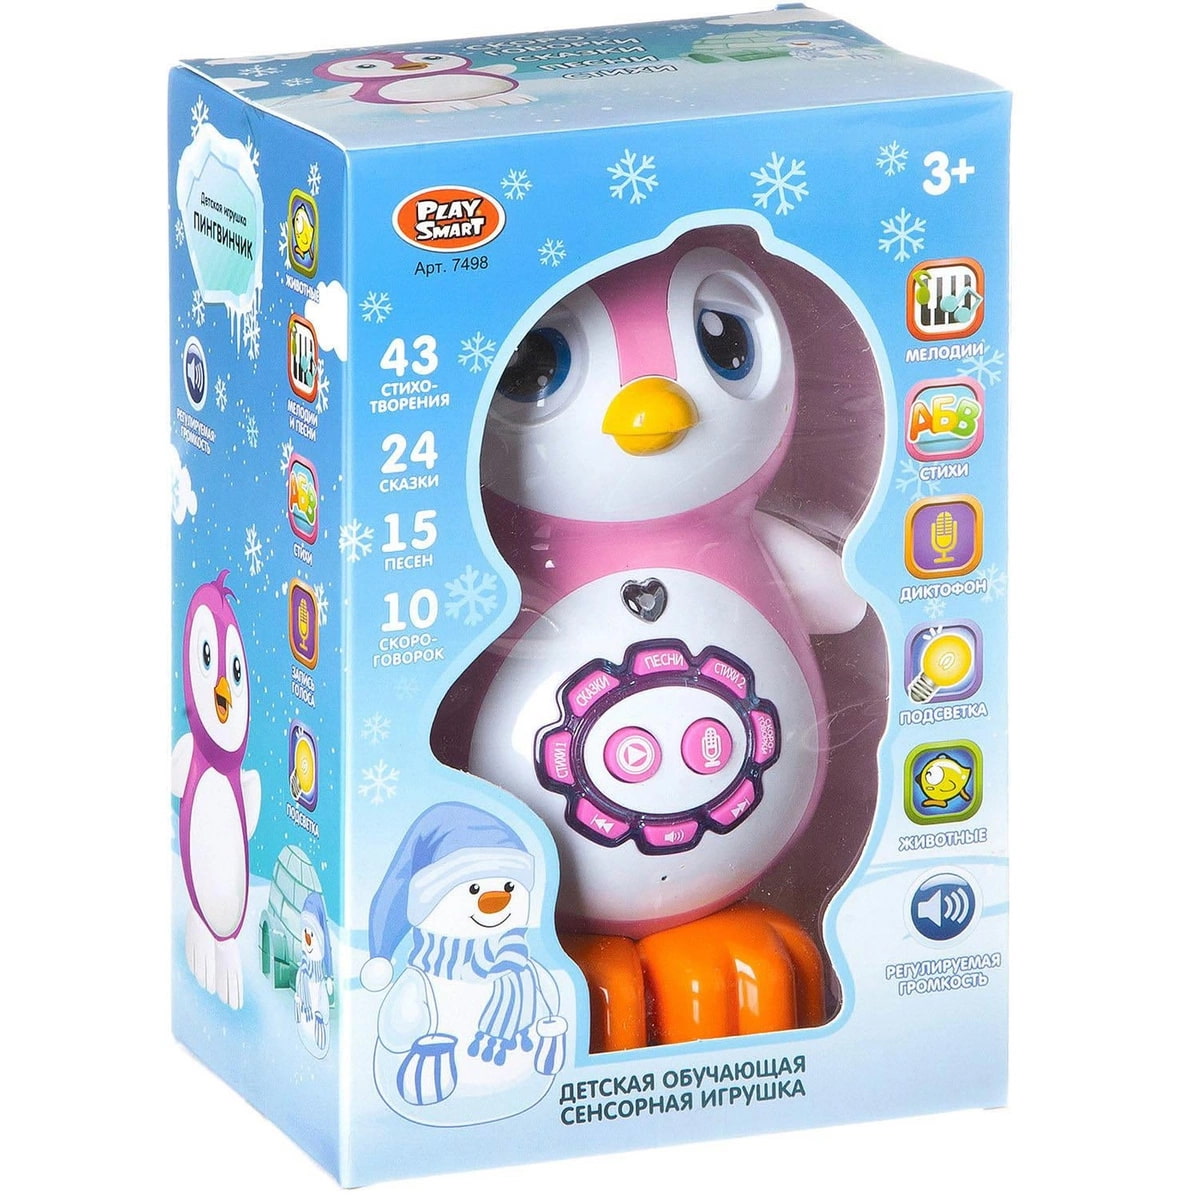 Умная игрушка купить. Play Smart Пингвин интерактивная игрушка. Интерактивная игрушка умный Пингвинчик. Игрушка Tomy Плескающийся Пингвин. 7498 Плей смарт.